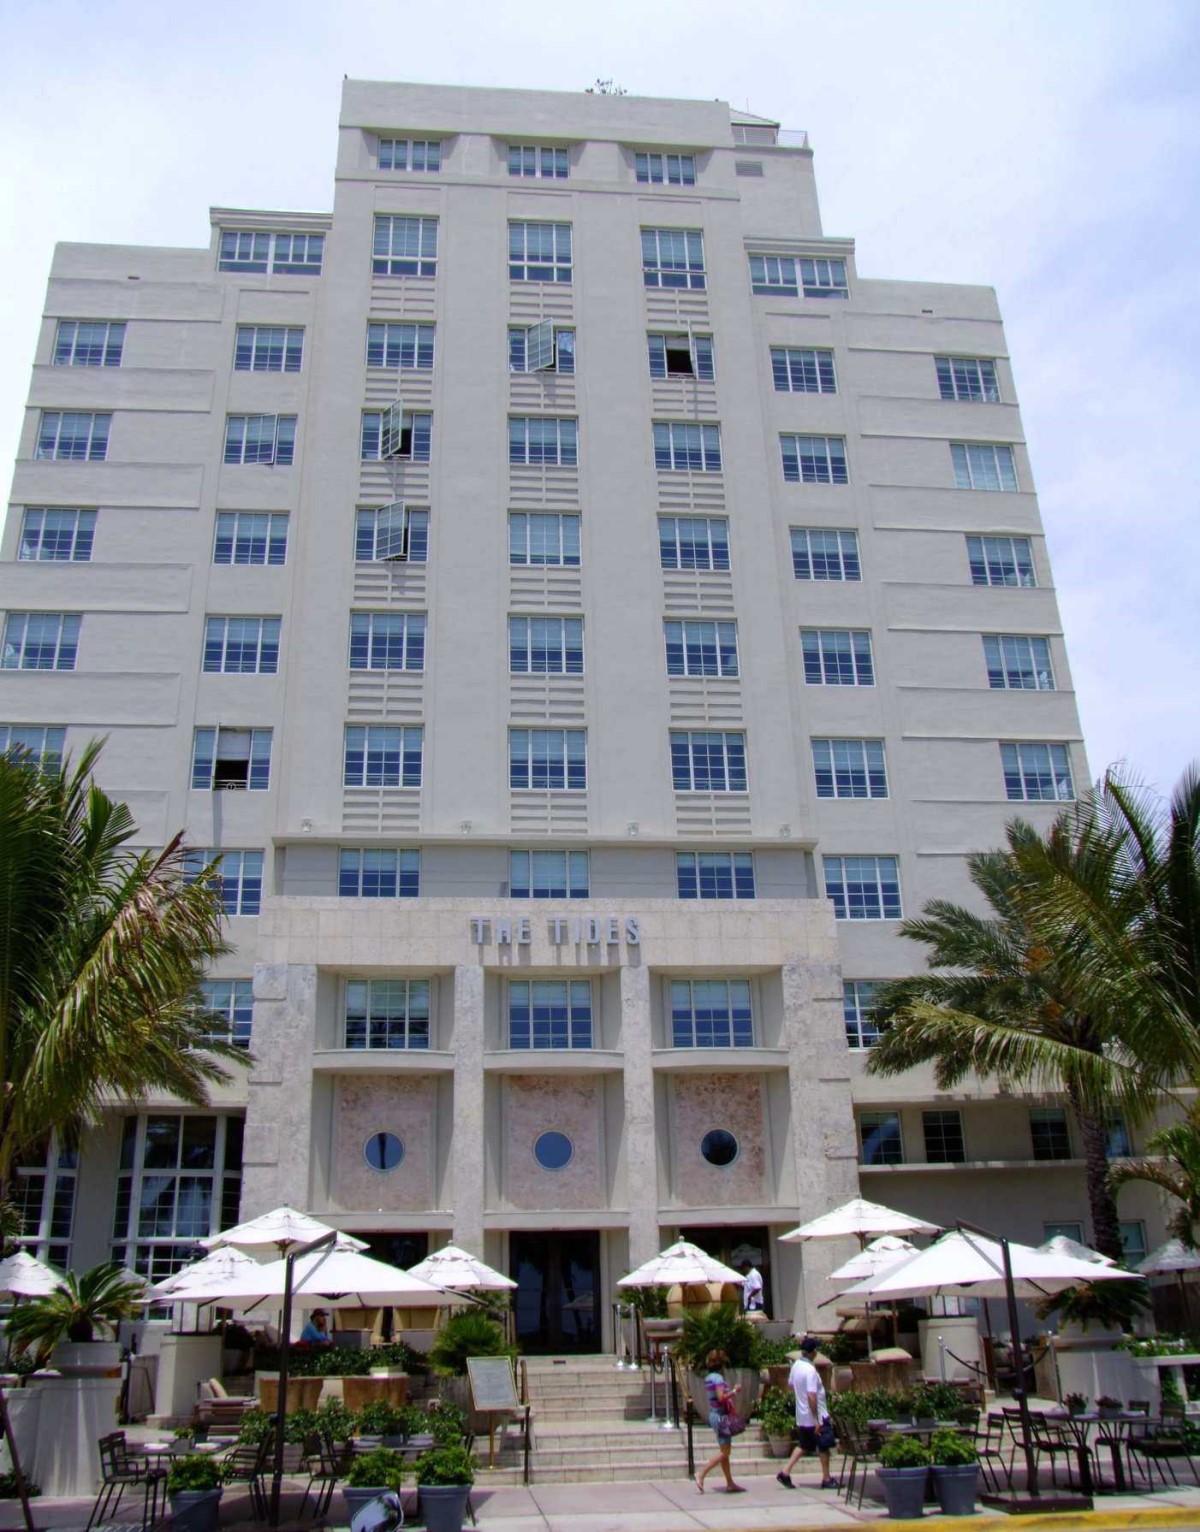 The Tides, Miami | Beach | Hotel | Architecture | Florida